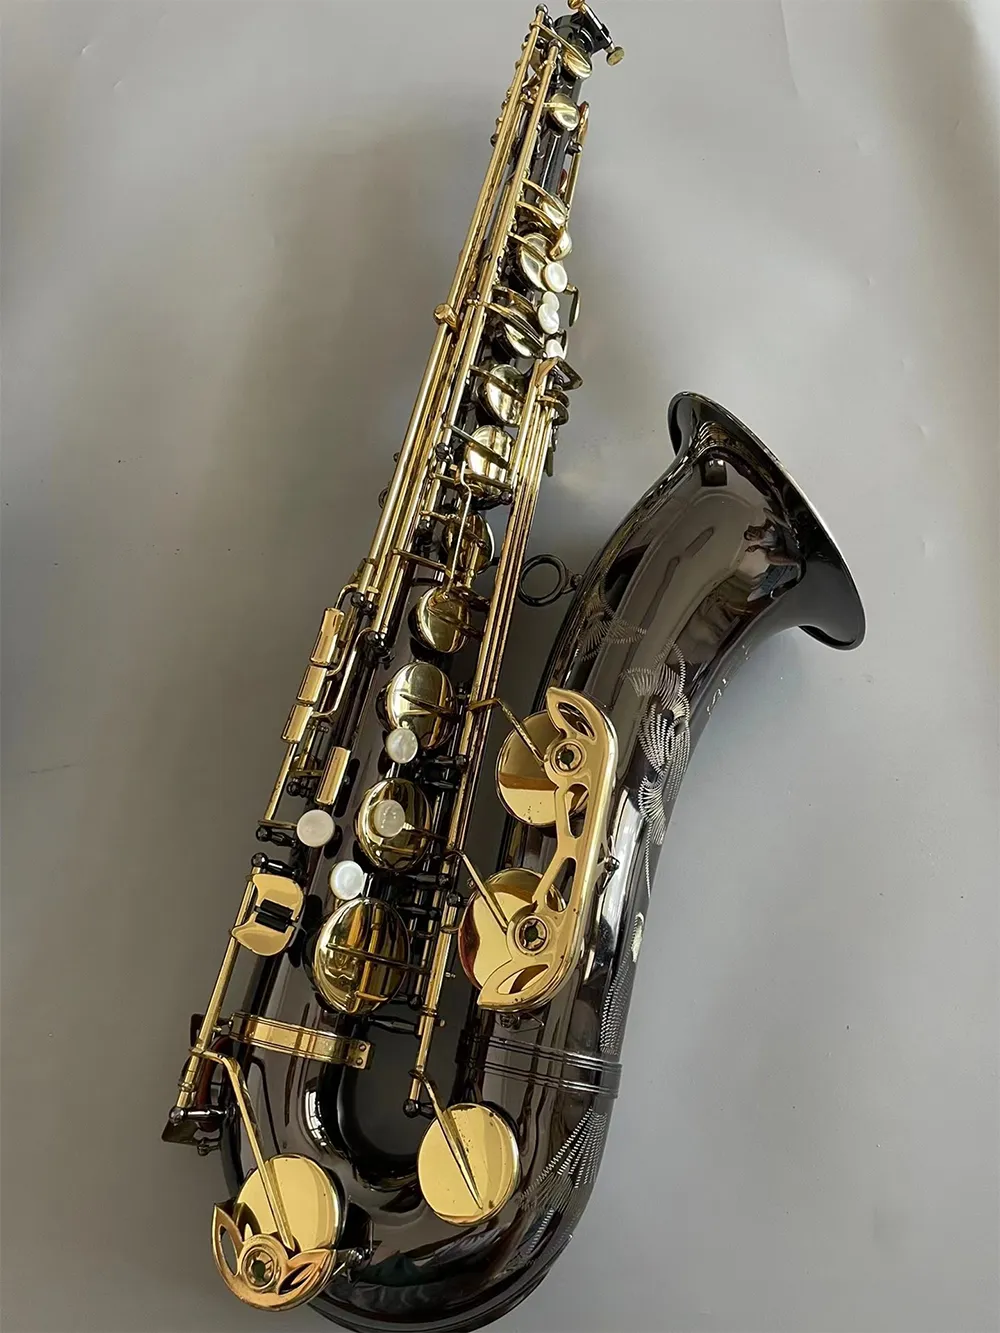 الأسود الذهب الأسود B-key المحترف الساكسفون الساكوفون الأسود مواد الذهب الذهب المحترف من الدرجة tentr sax jazz